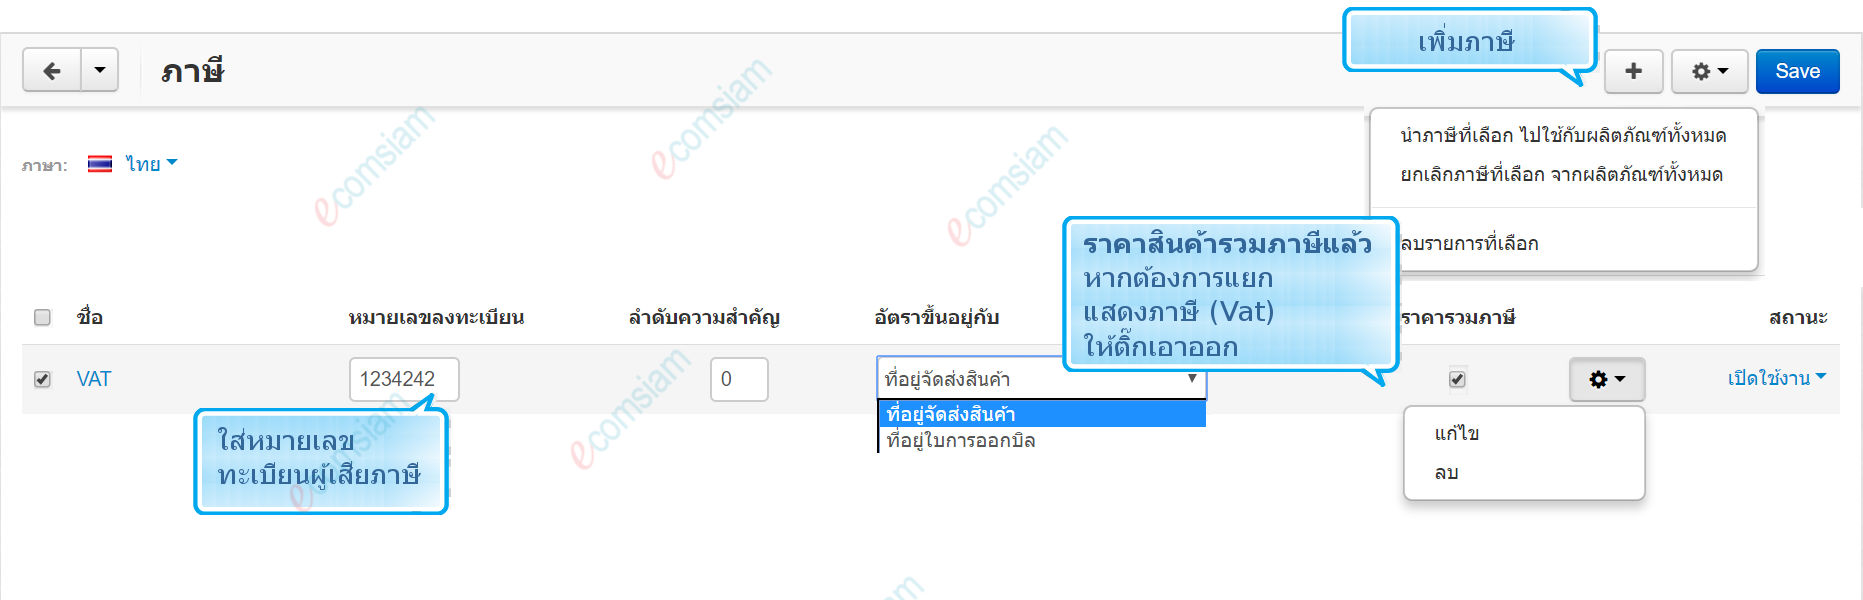 เว็บไซต์สำเร็จรูปไทย - คู่มือร้านออนไลน์ - การจัดการร้านออนไลน์-ภาษี tax